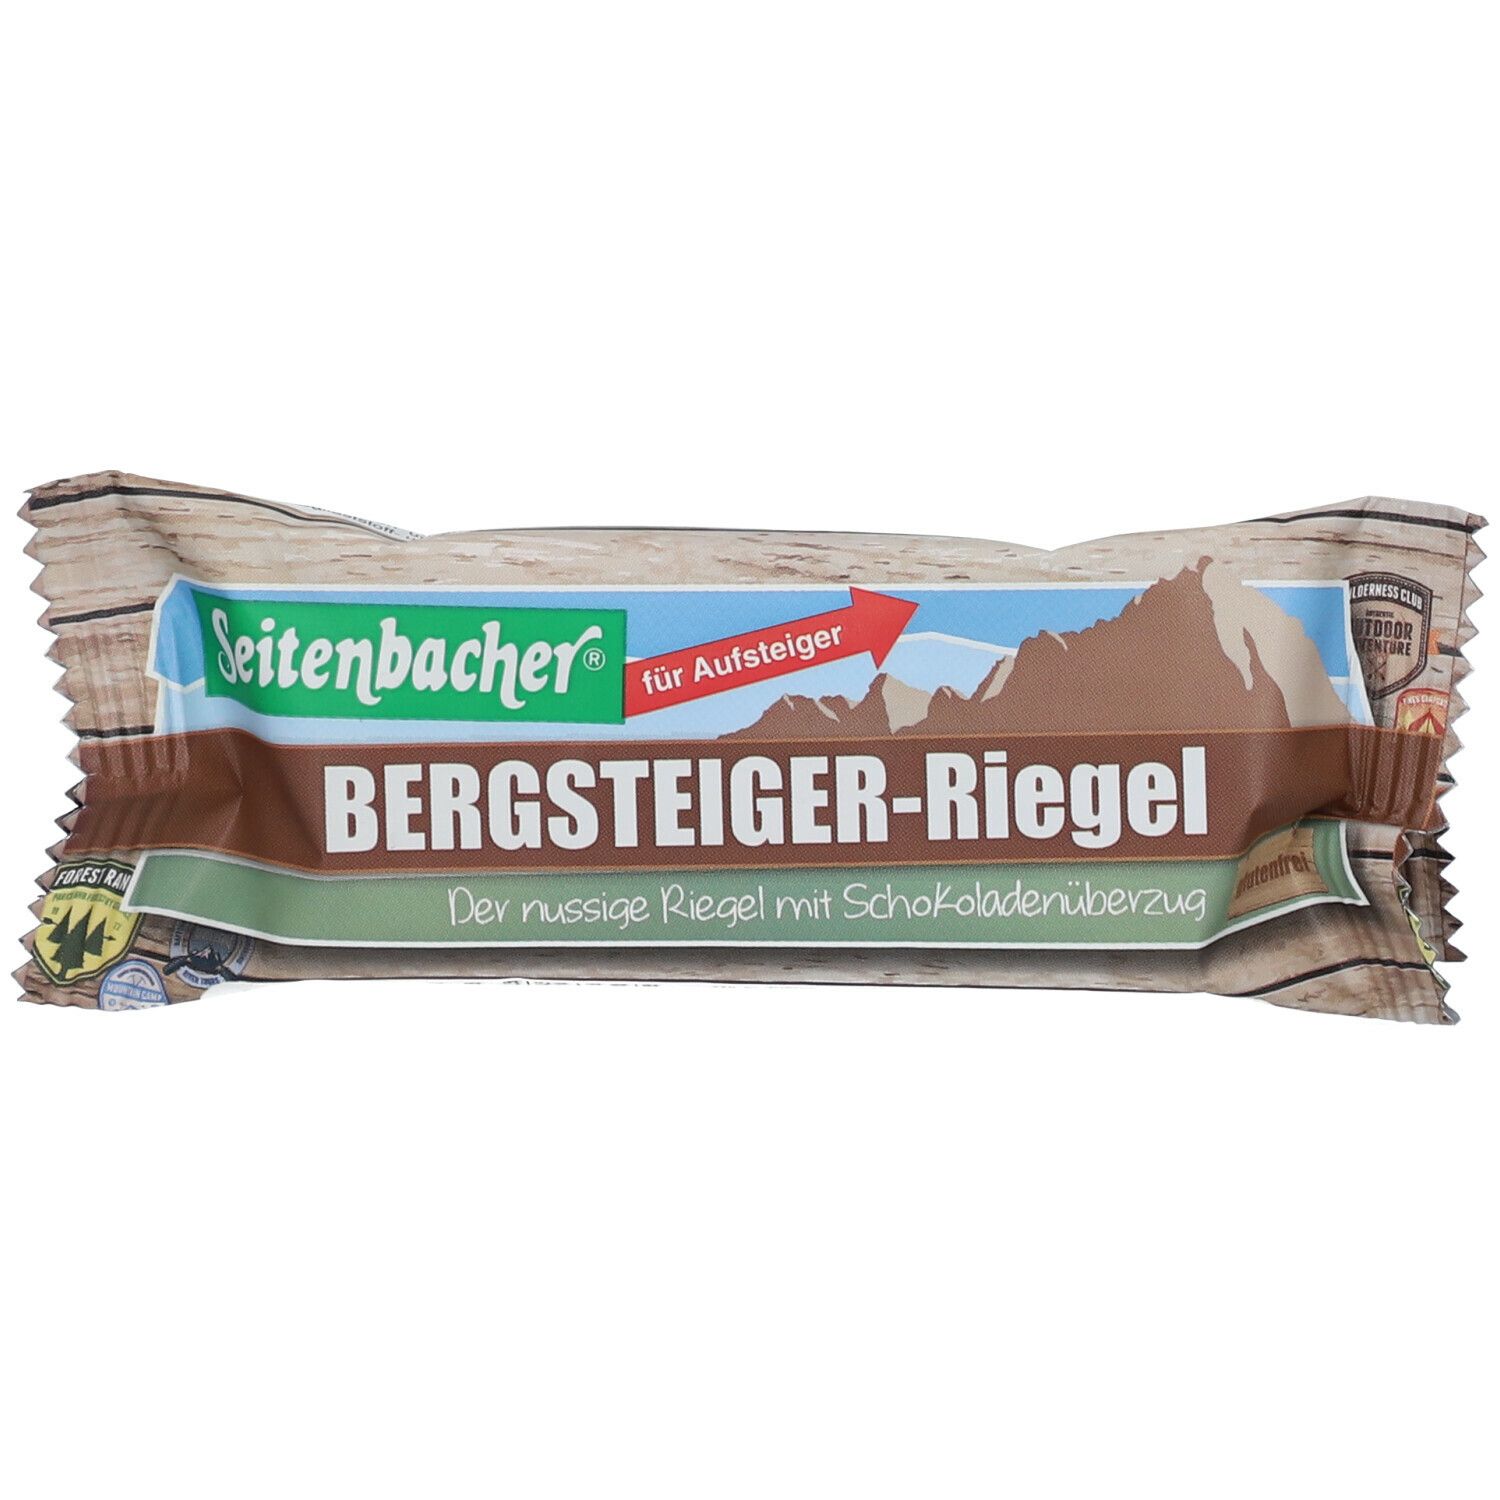 Image of Seitenbacher® Bergsteiger-Riegel